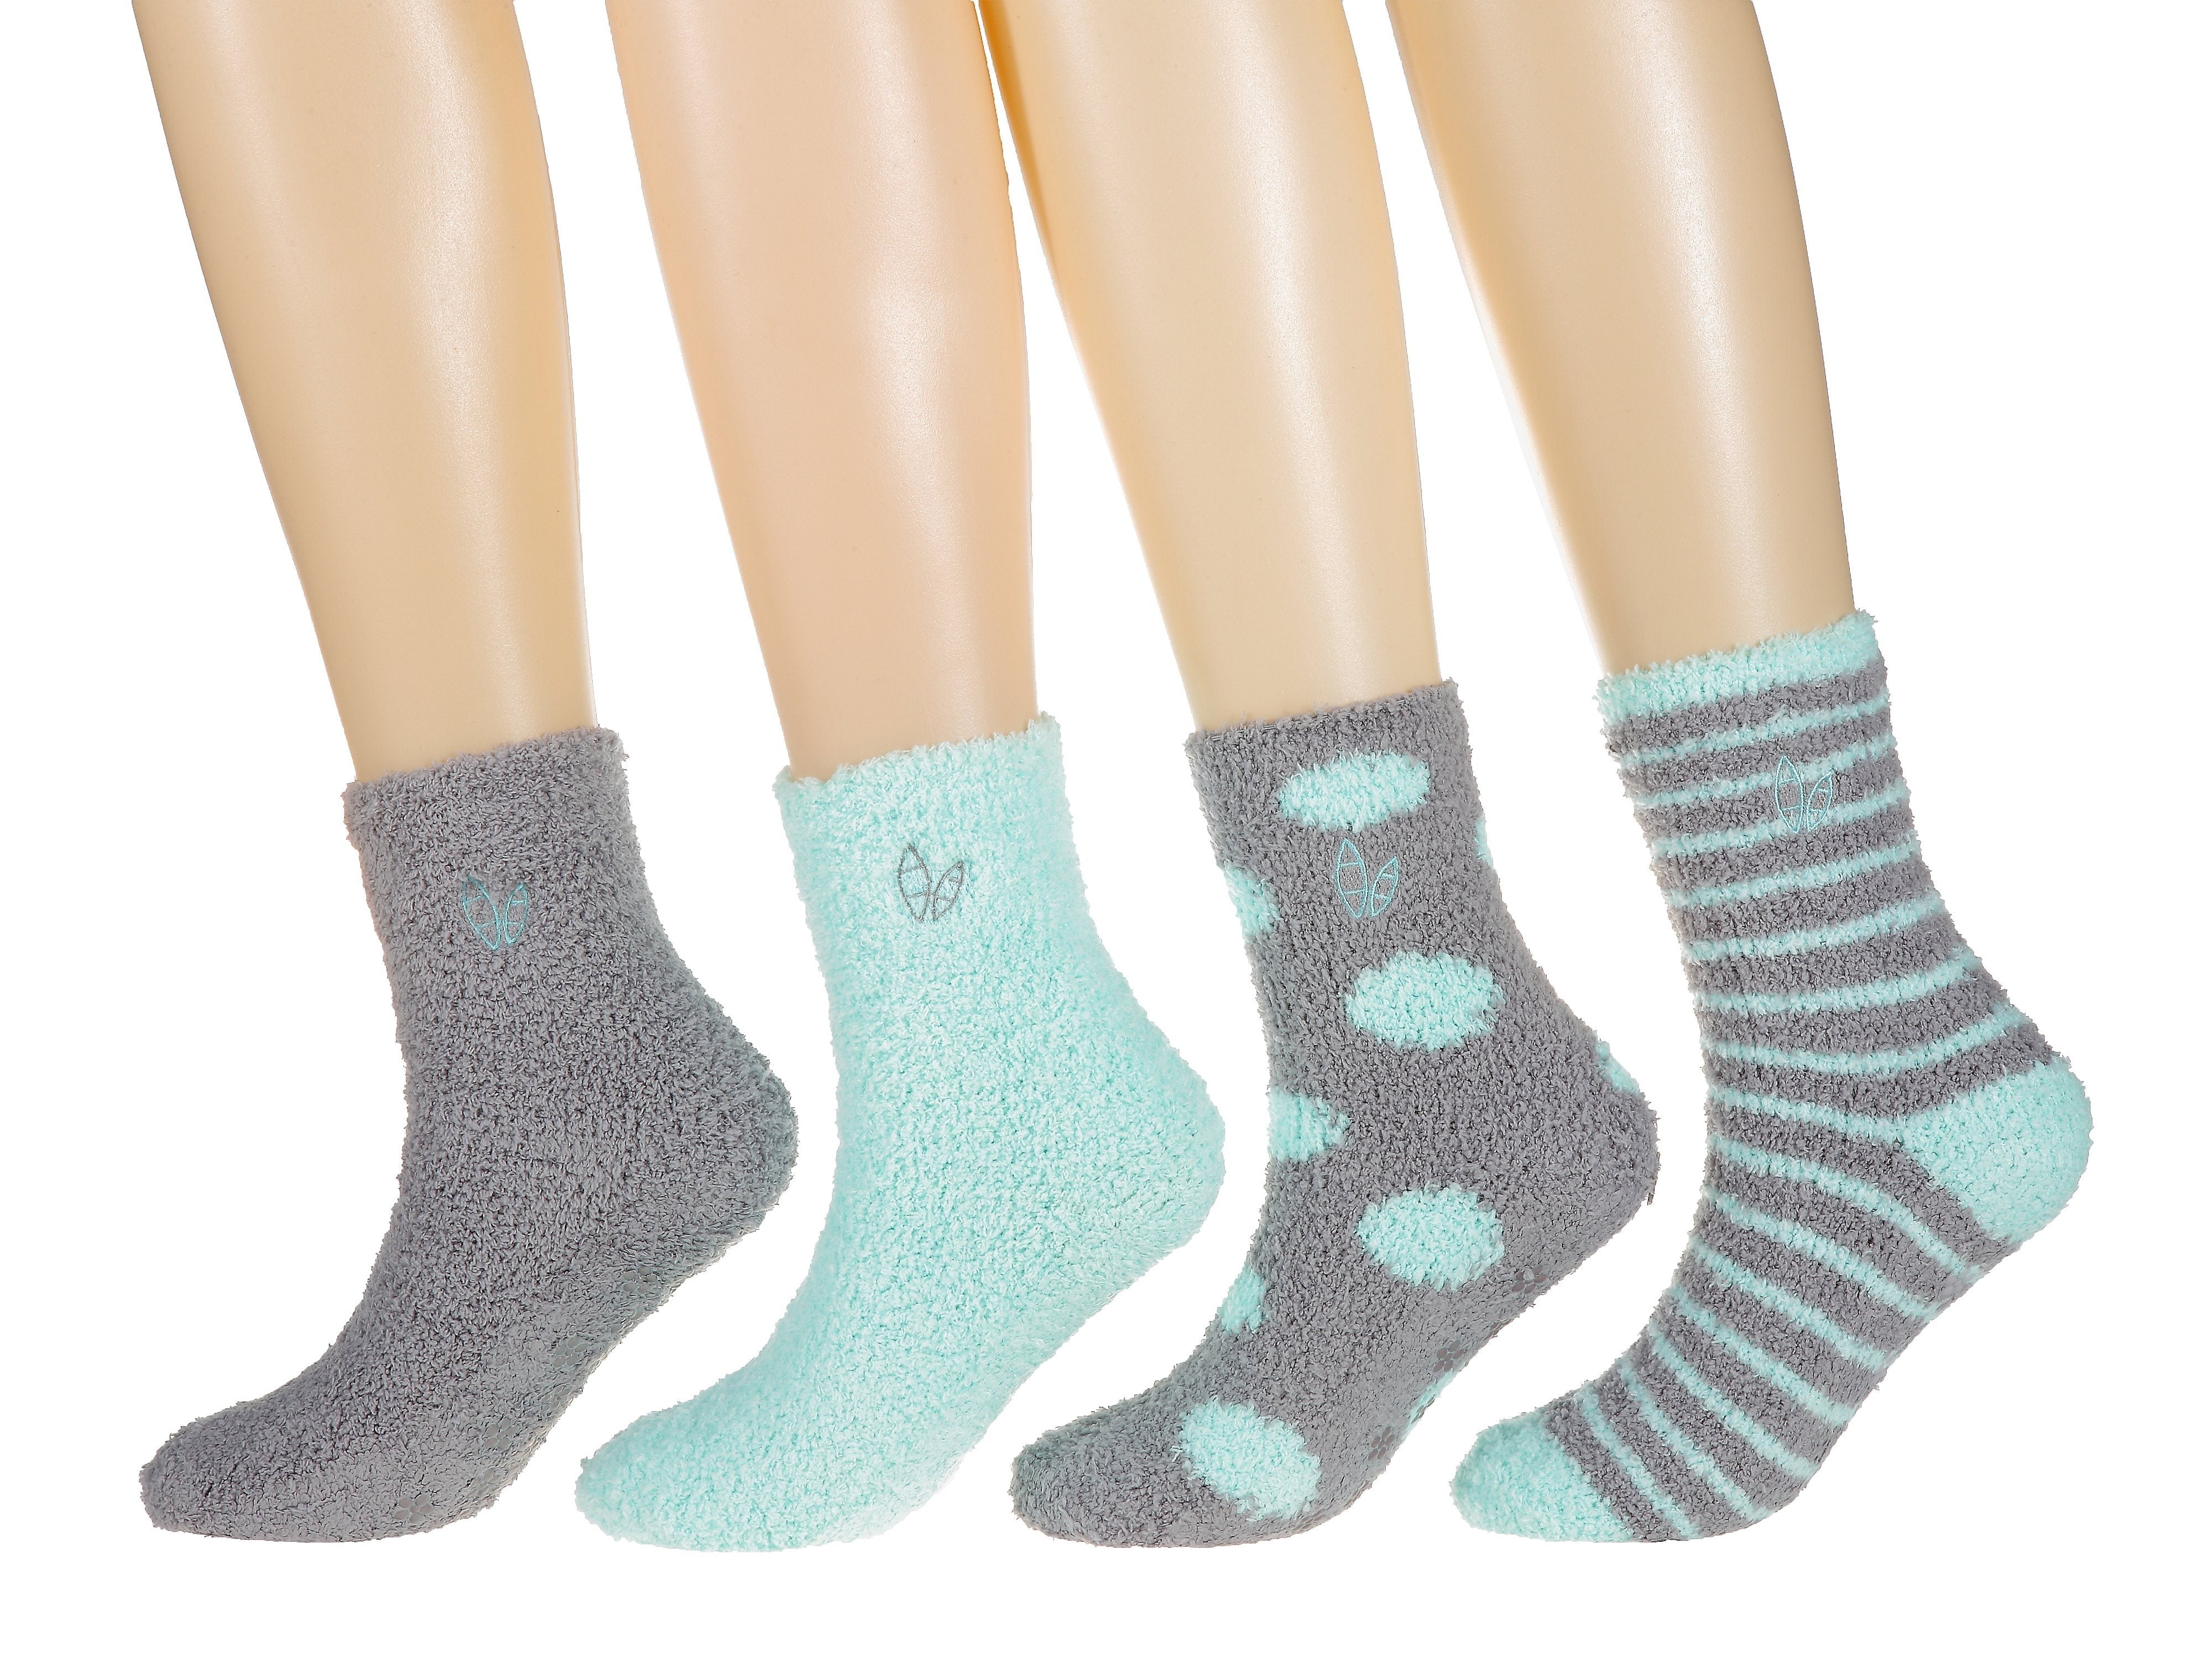 Women's (4 Pairs) Soft Anti-Skid Fuzzy Winter Crew Socks